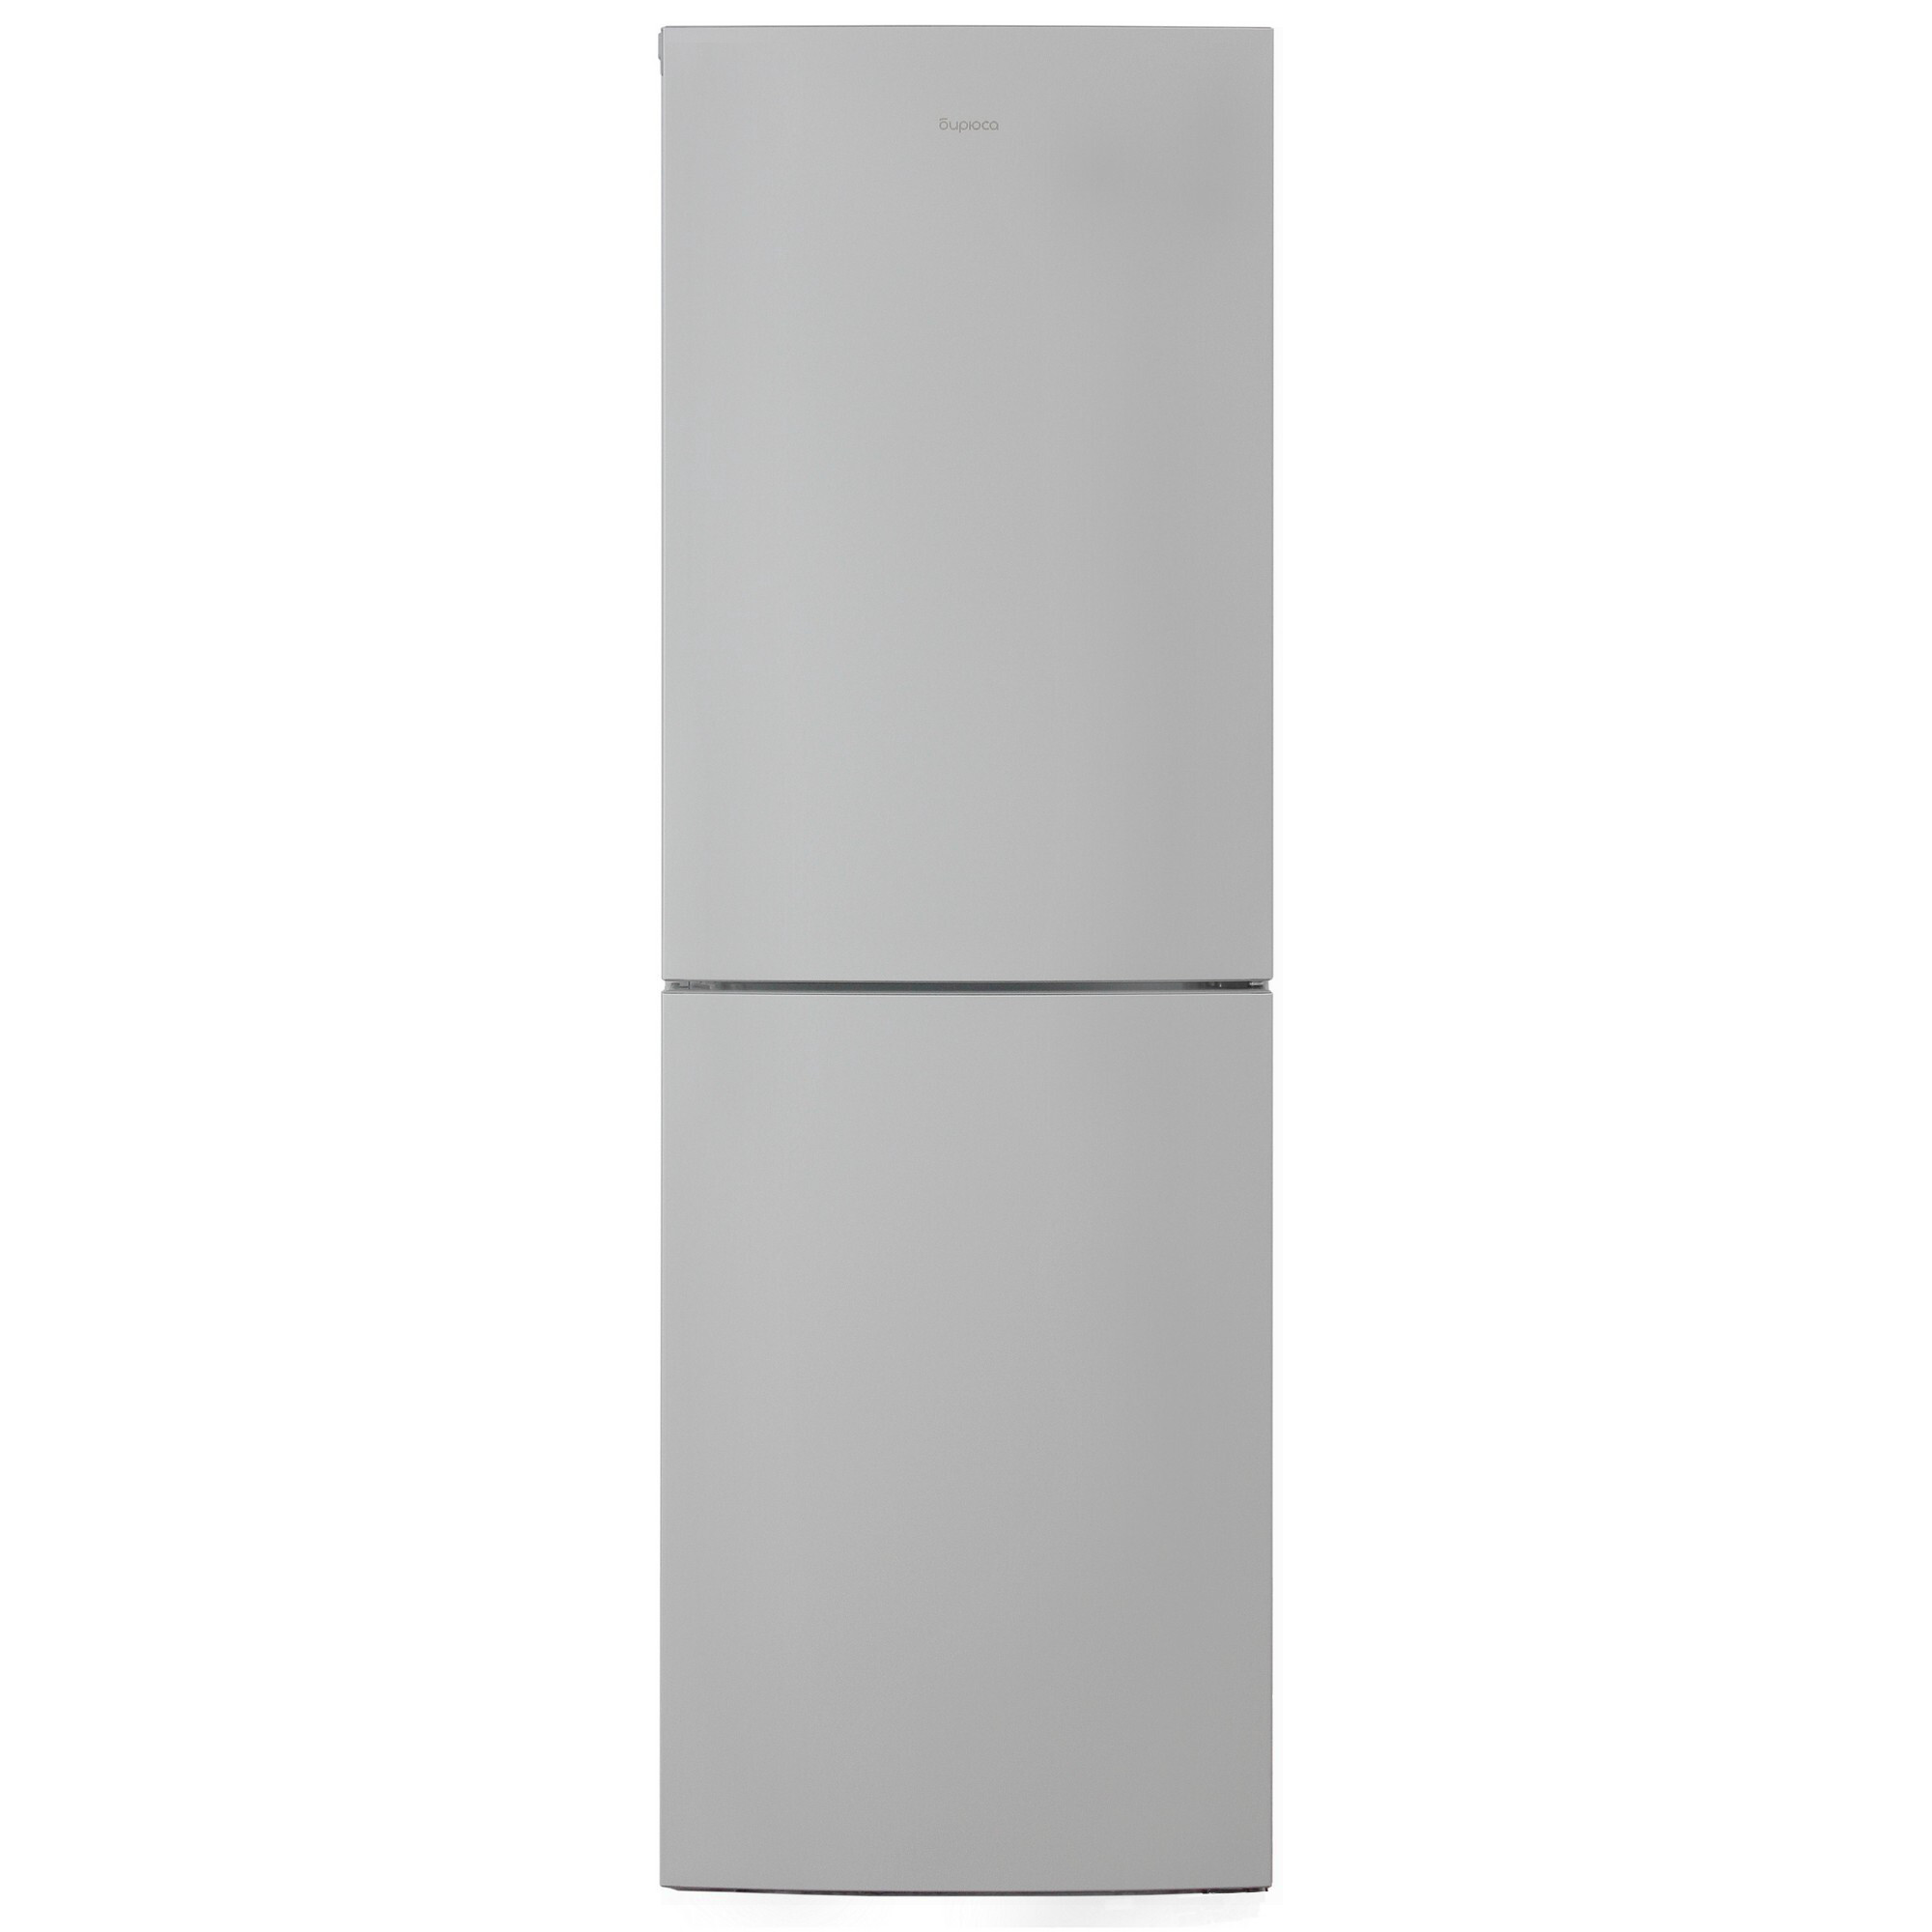 Холодильник канди двухкамерный отзывы. Rk621syb4.